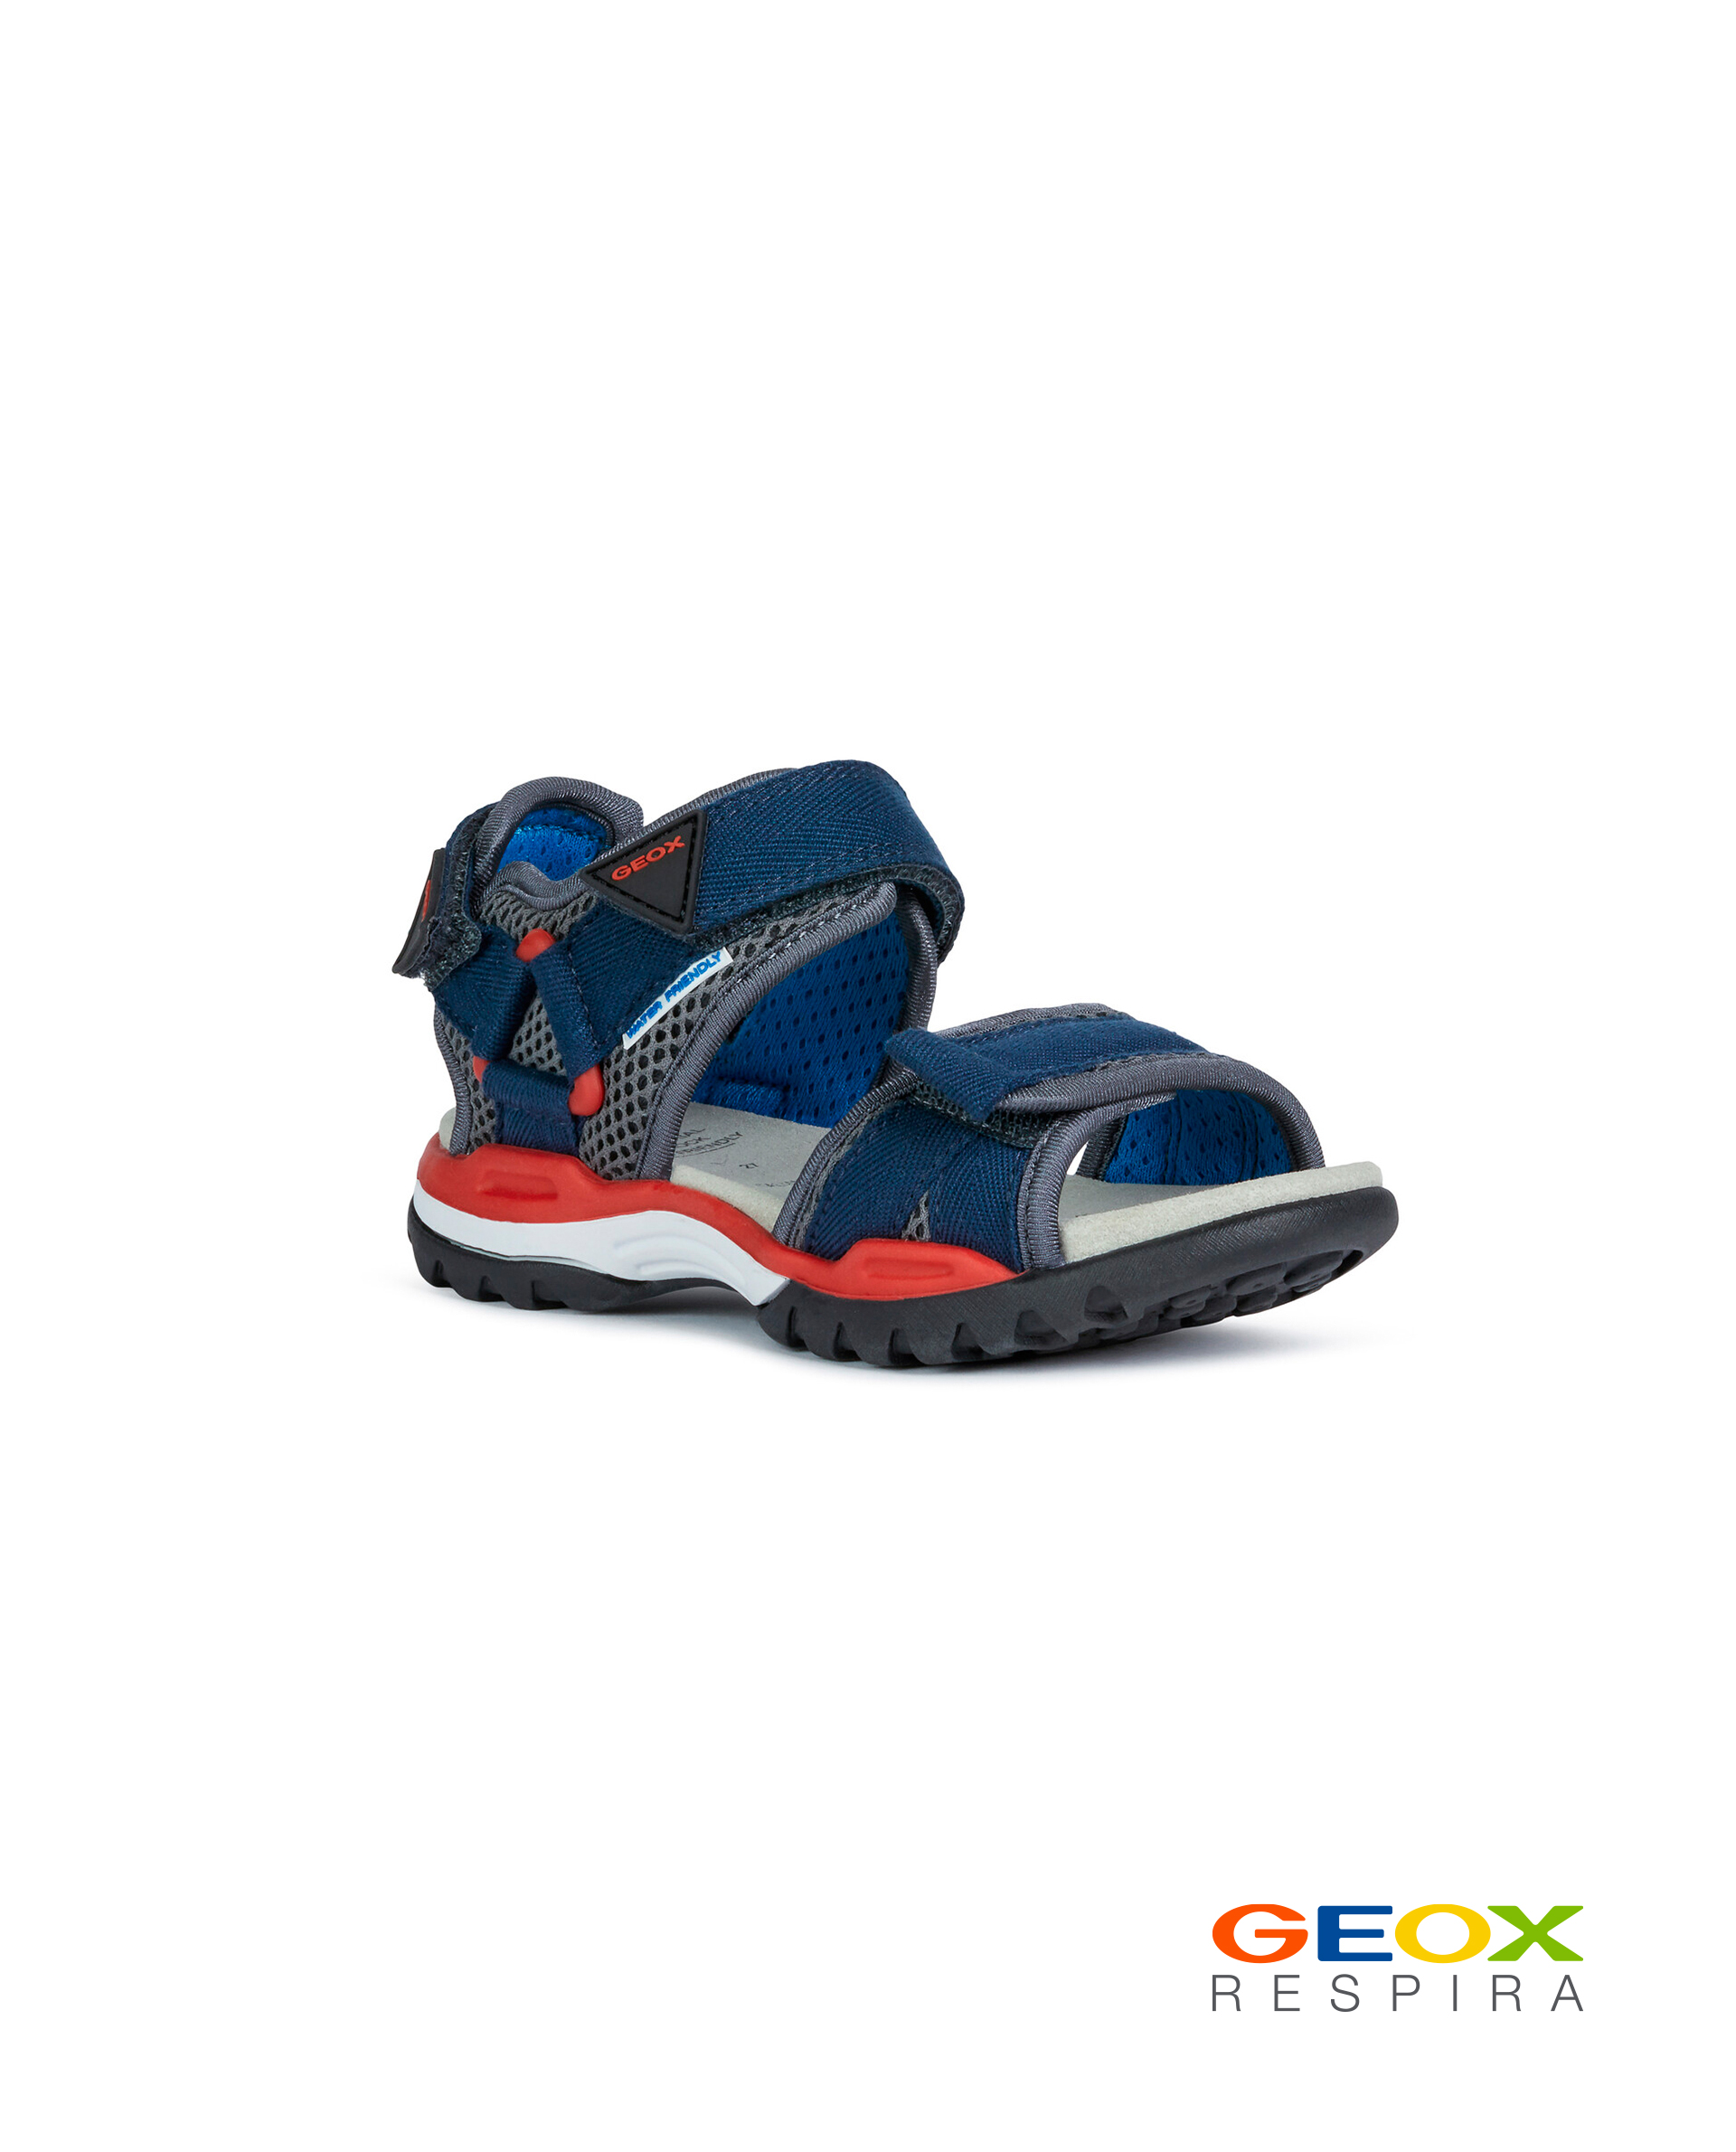 Синие сандалии Geox для мальчика J020RC01411C0735, размер 37, цвет синий - фото 1